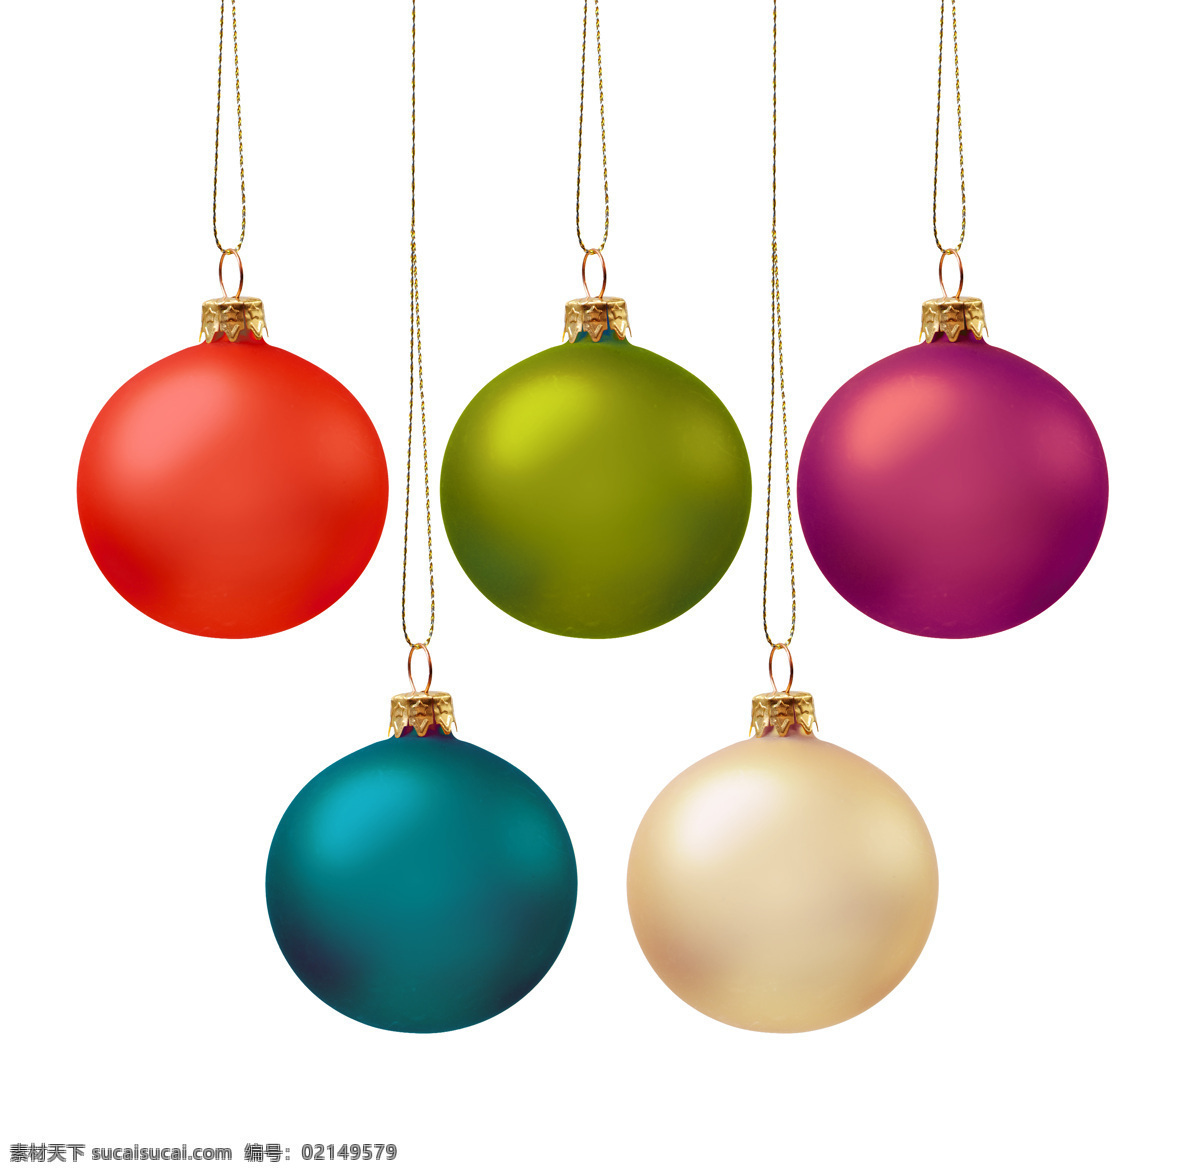 彩色 吊球 装饰 圣诞球 圣诞树装饰品 圣诞节素材 新年素材 圣诞节背景 新年背景 节日庆典 生活百科